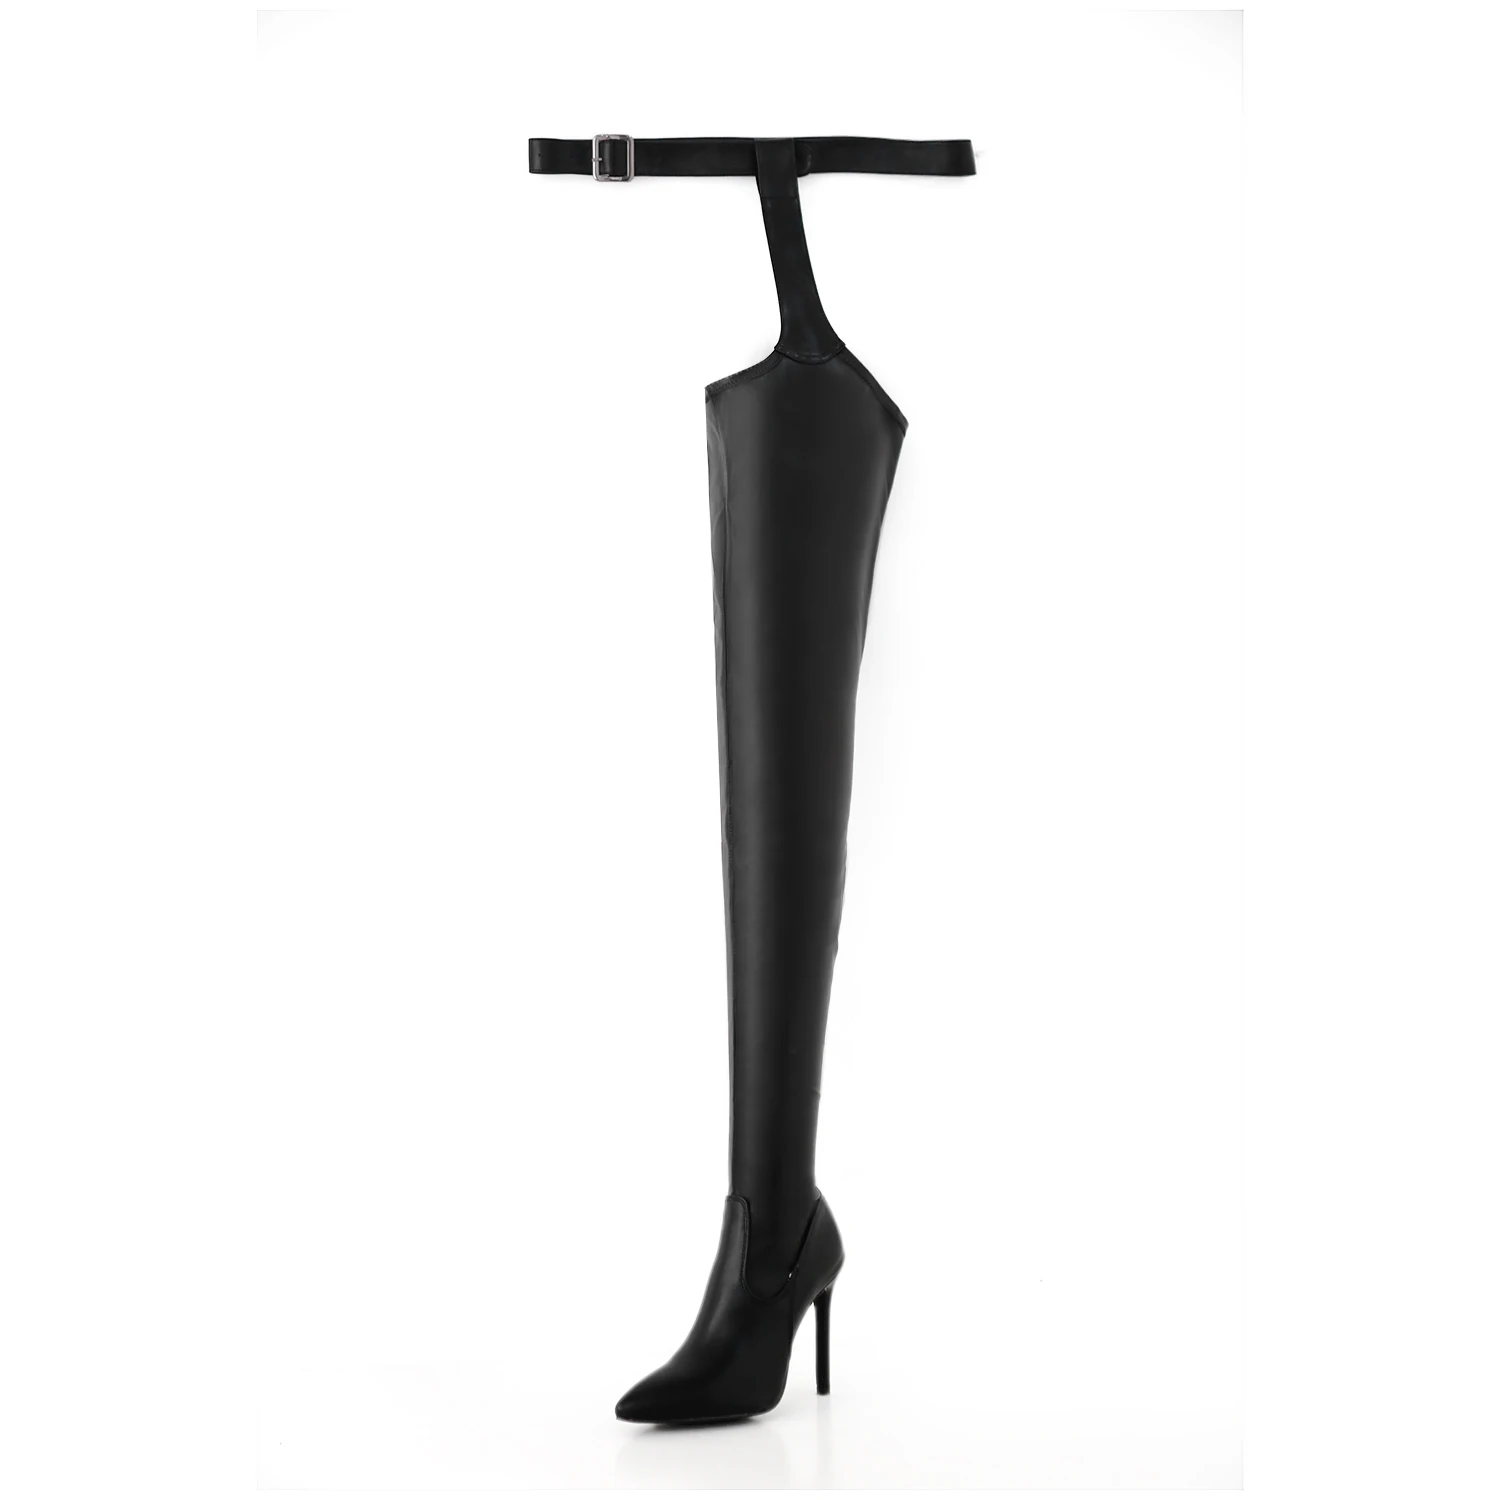 NIUFUNI/ботфорты выше колена из искусственной кожи высокого качества в стиле Рианны; высокие ботинки; пикантные женские ботинки с острым носком, пряжкой и ремешком на молнии